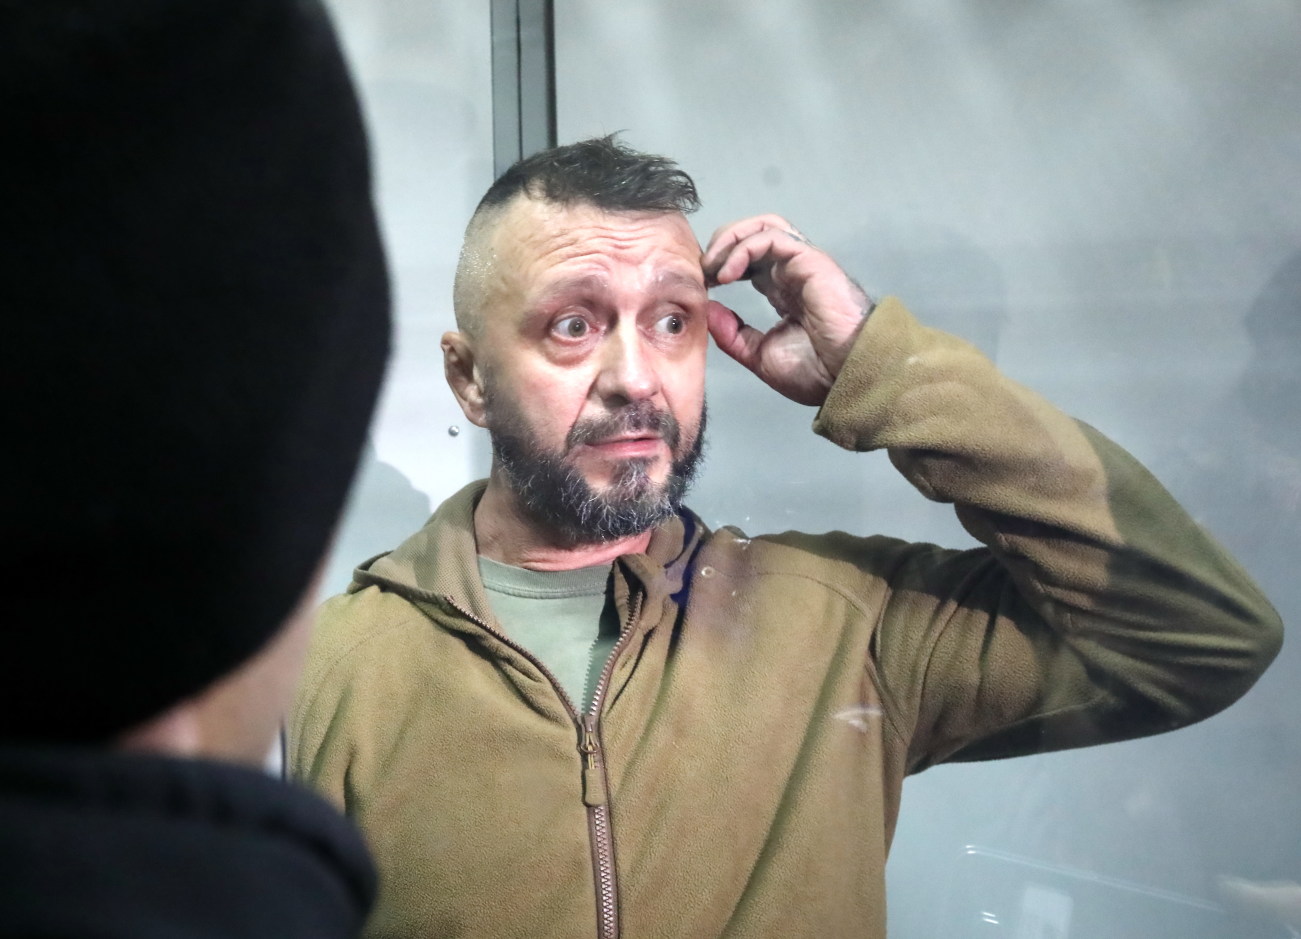 В Киеве избрали меру пресечения обвиняемым по делу Шеремета